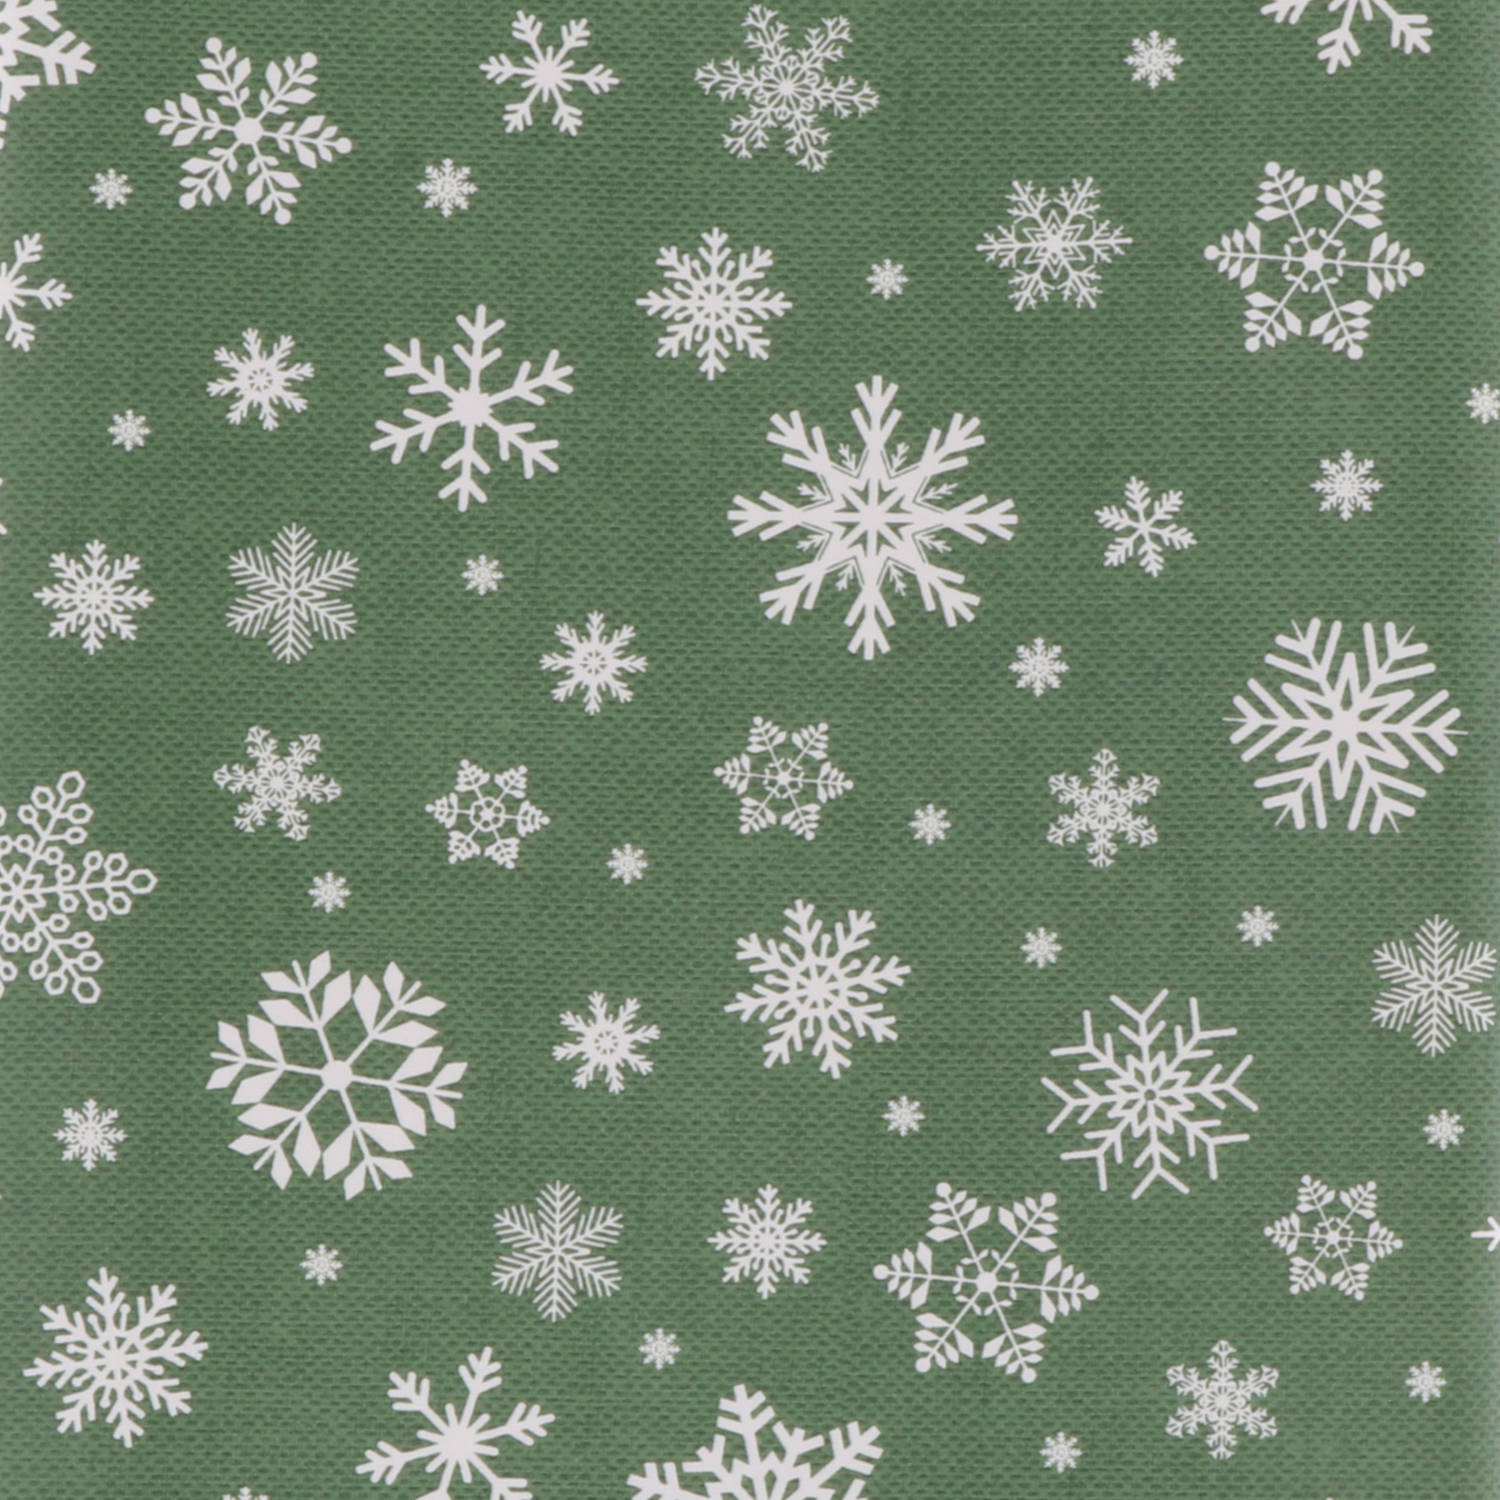 Verwisselbaar bubbel monster Kerst tafelzeil/tafelkleed groen met witte sneeuwvlokken print 140 x 220 cm  - Tafellakens | Blokker